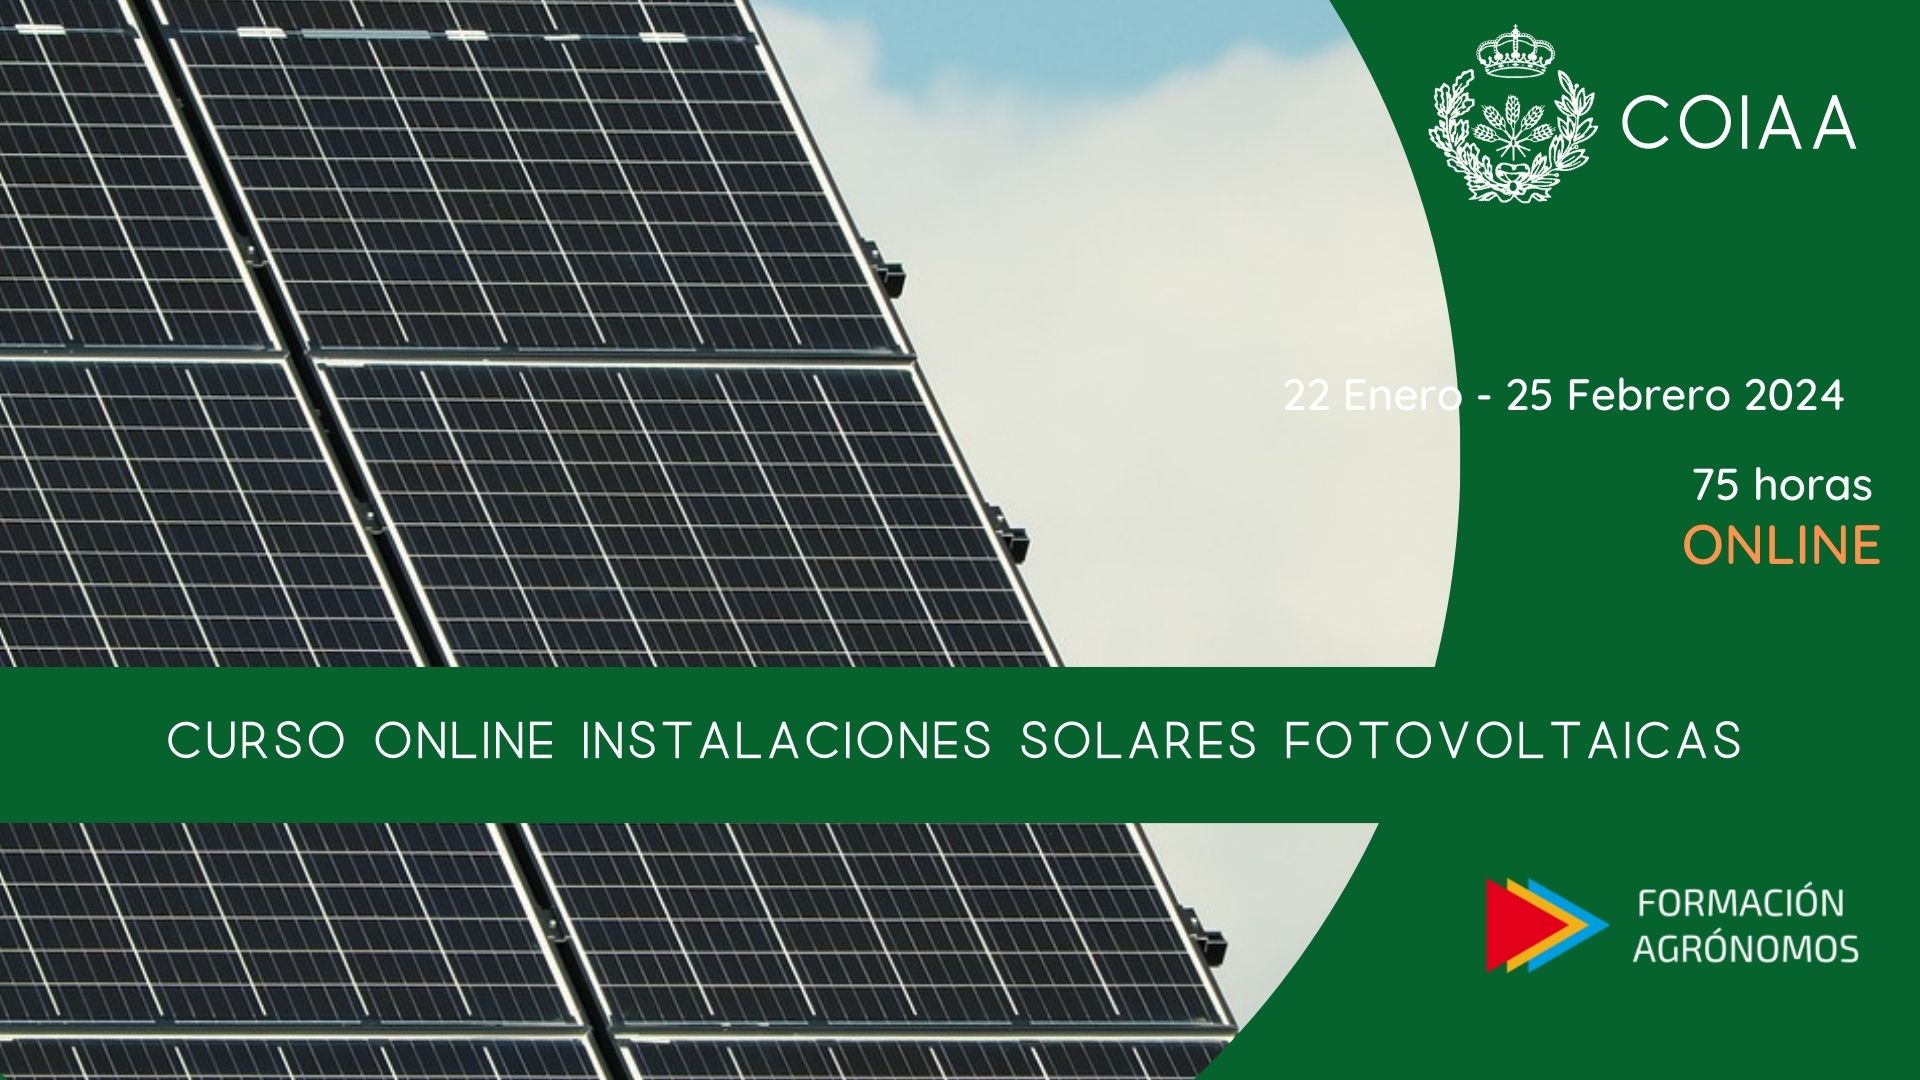  Curso online instalaciones solares fotovoltaicas1